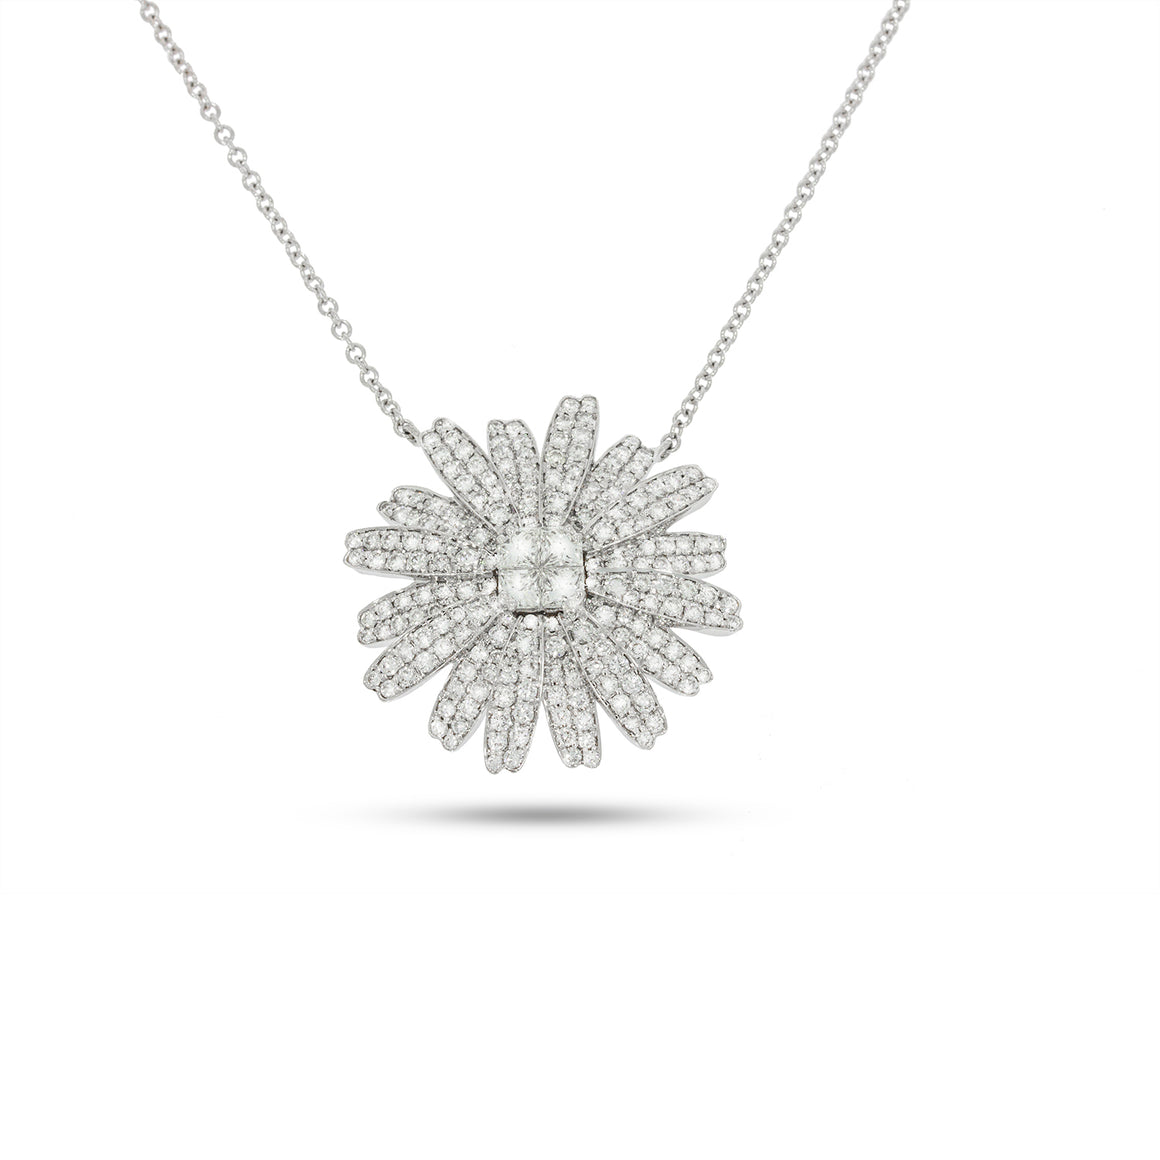 Big Stunning flower shape 1.64 ct. diamonds necklace, unique design.